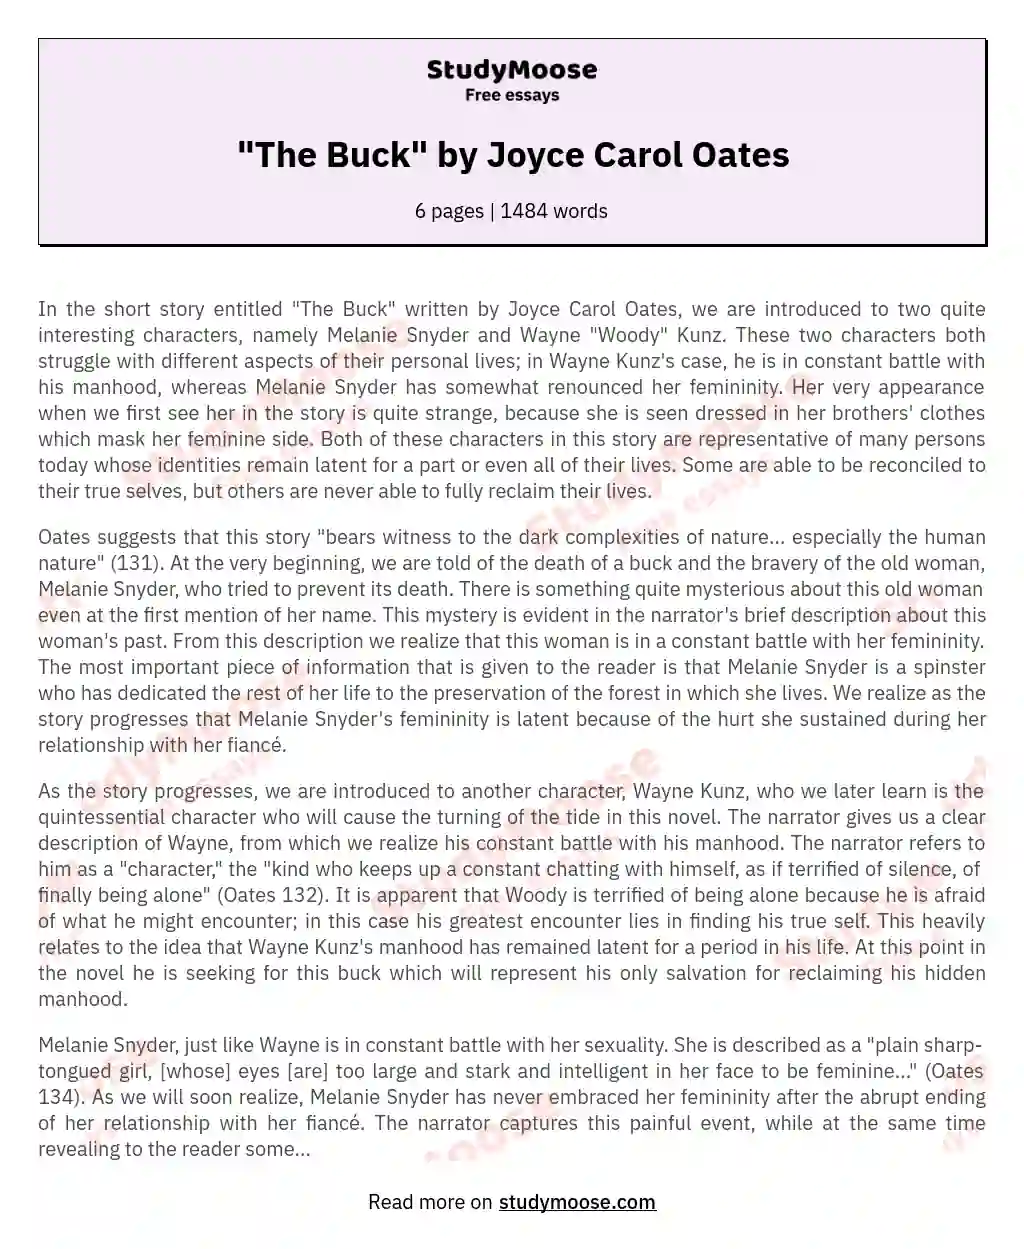 "The Buck" by Joyce Carol Oates essay